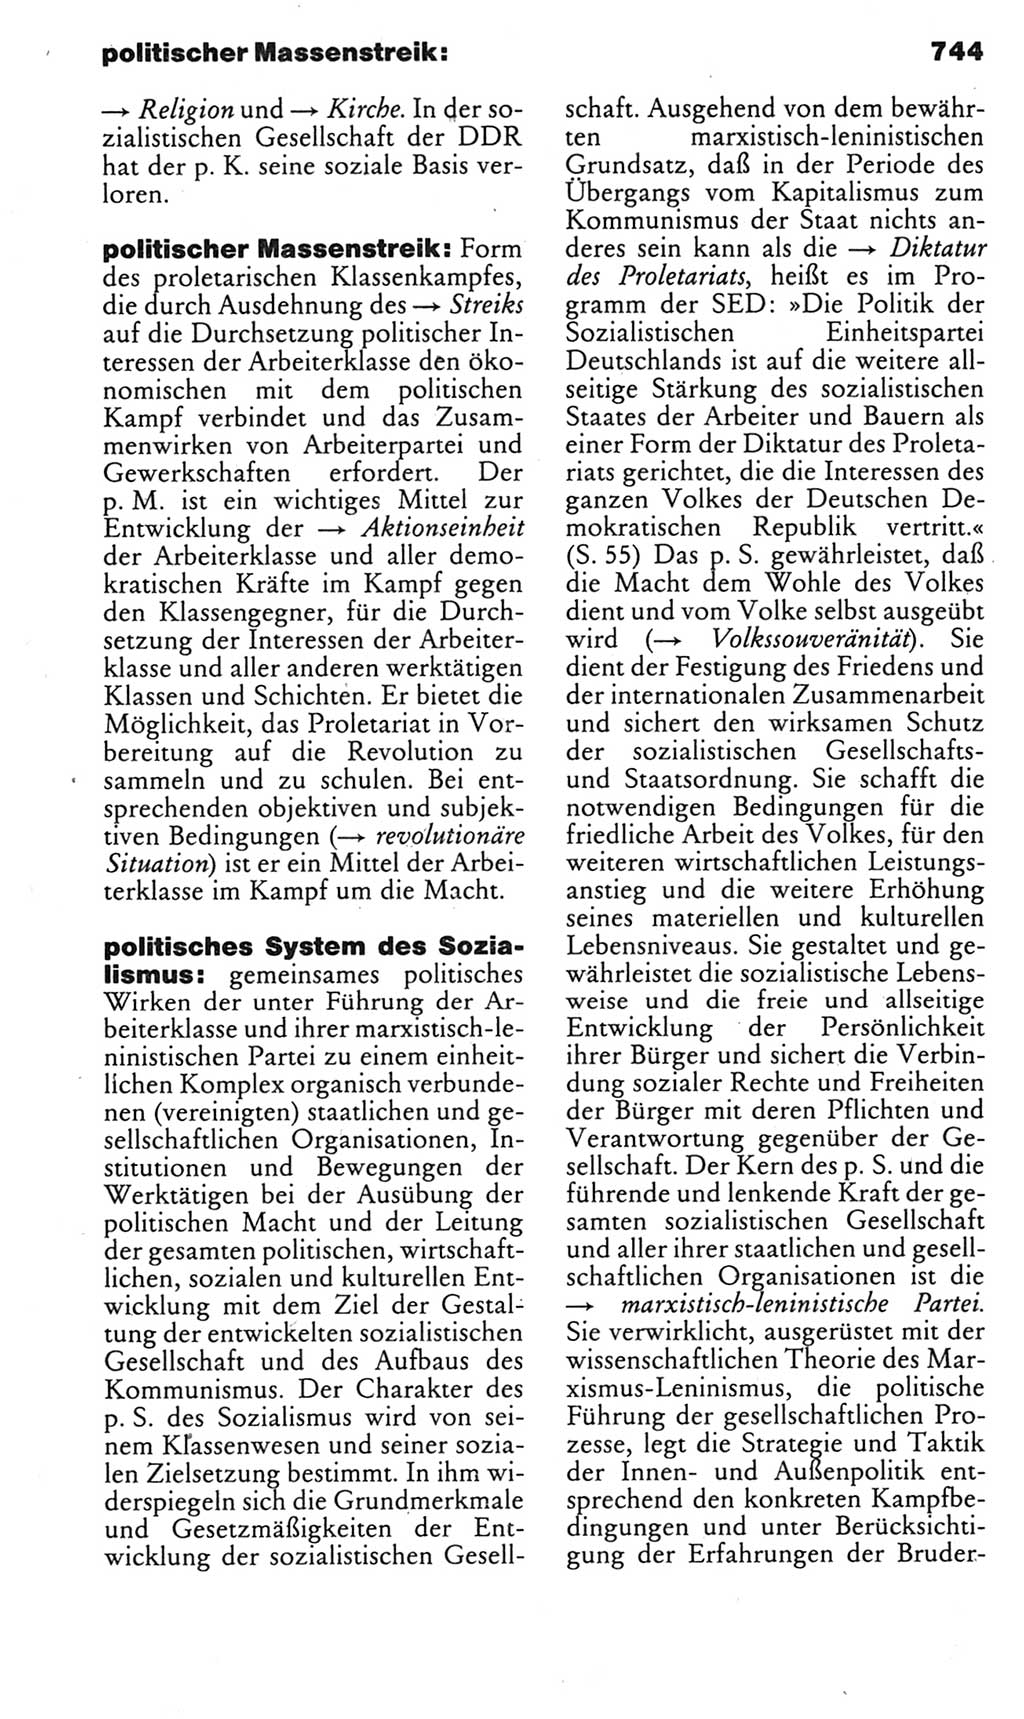 Kleines politisches Wörterbuch [Deutsche Demokratische Republik (DDR)] 1985, Seite 744 (Kl. pol. Wb. DDR 1985, S. 744)